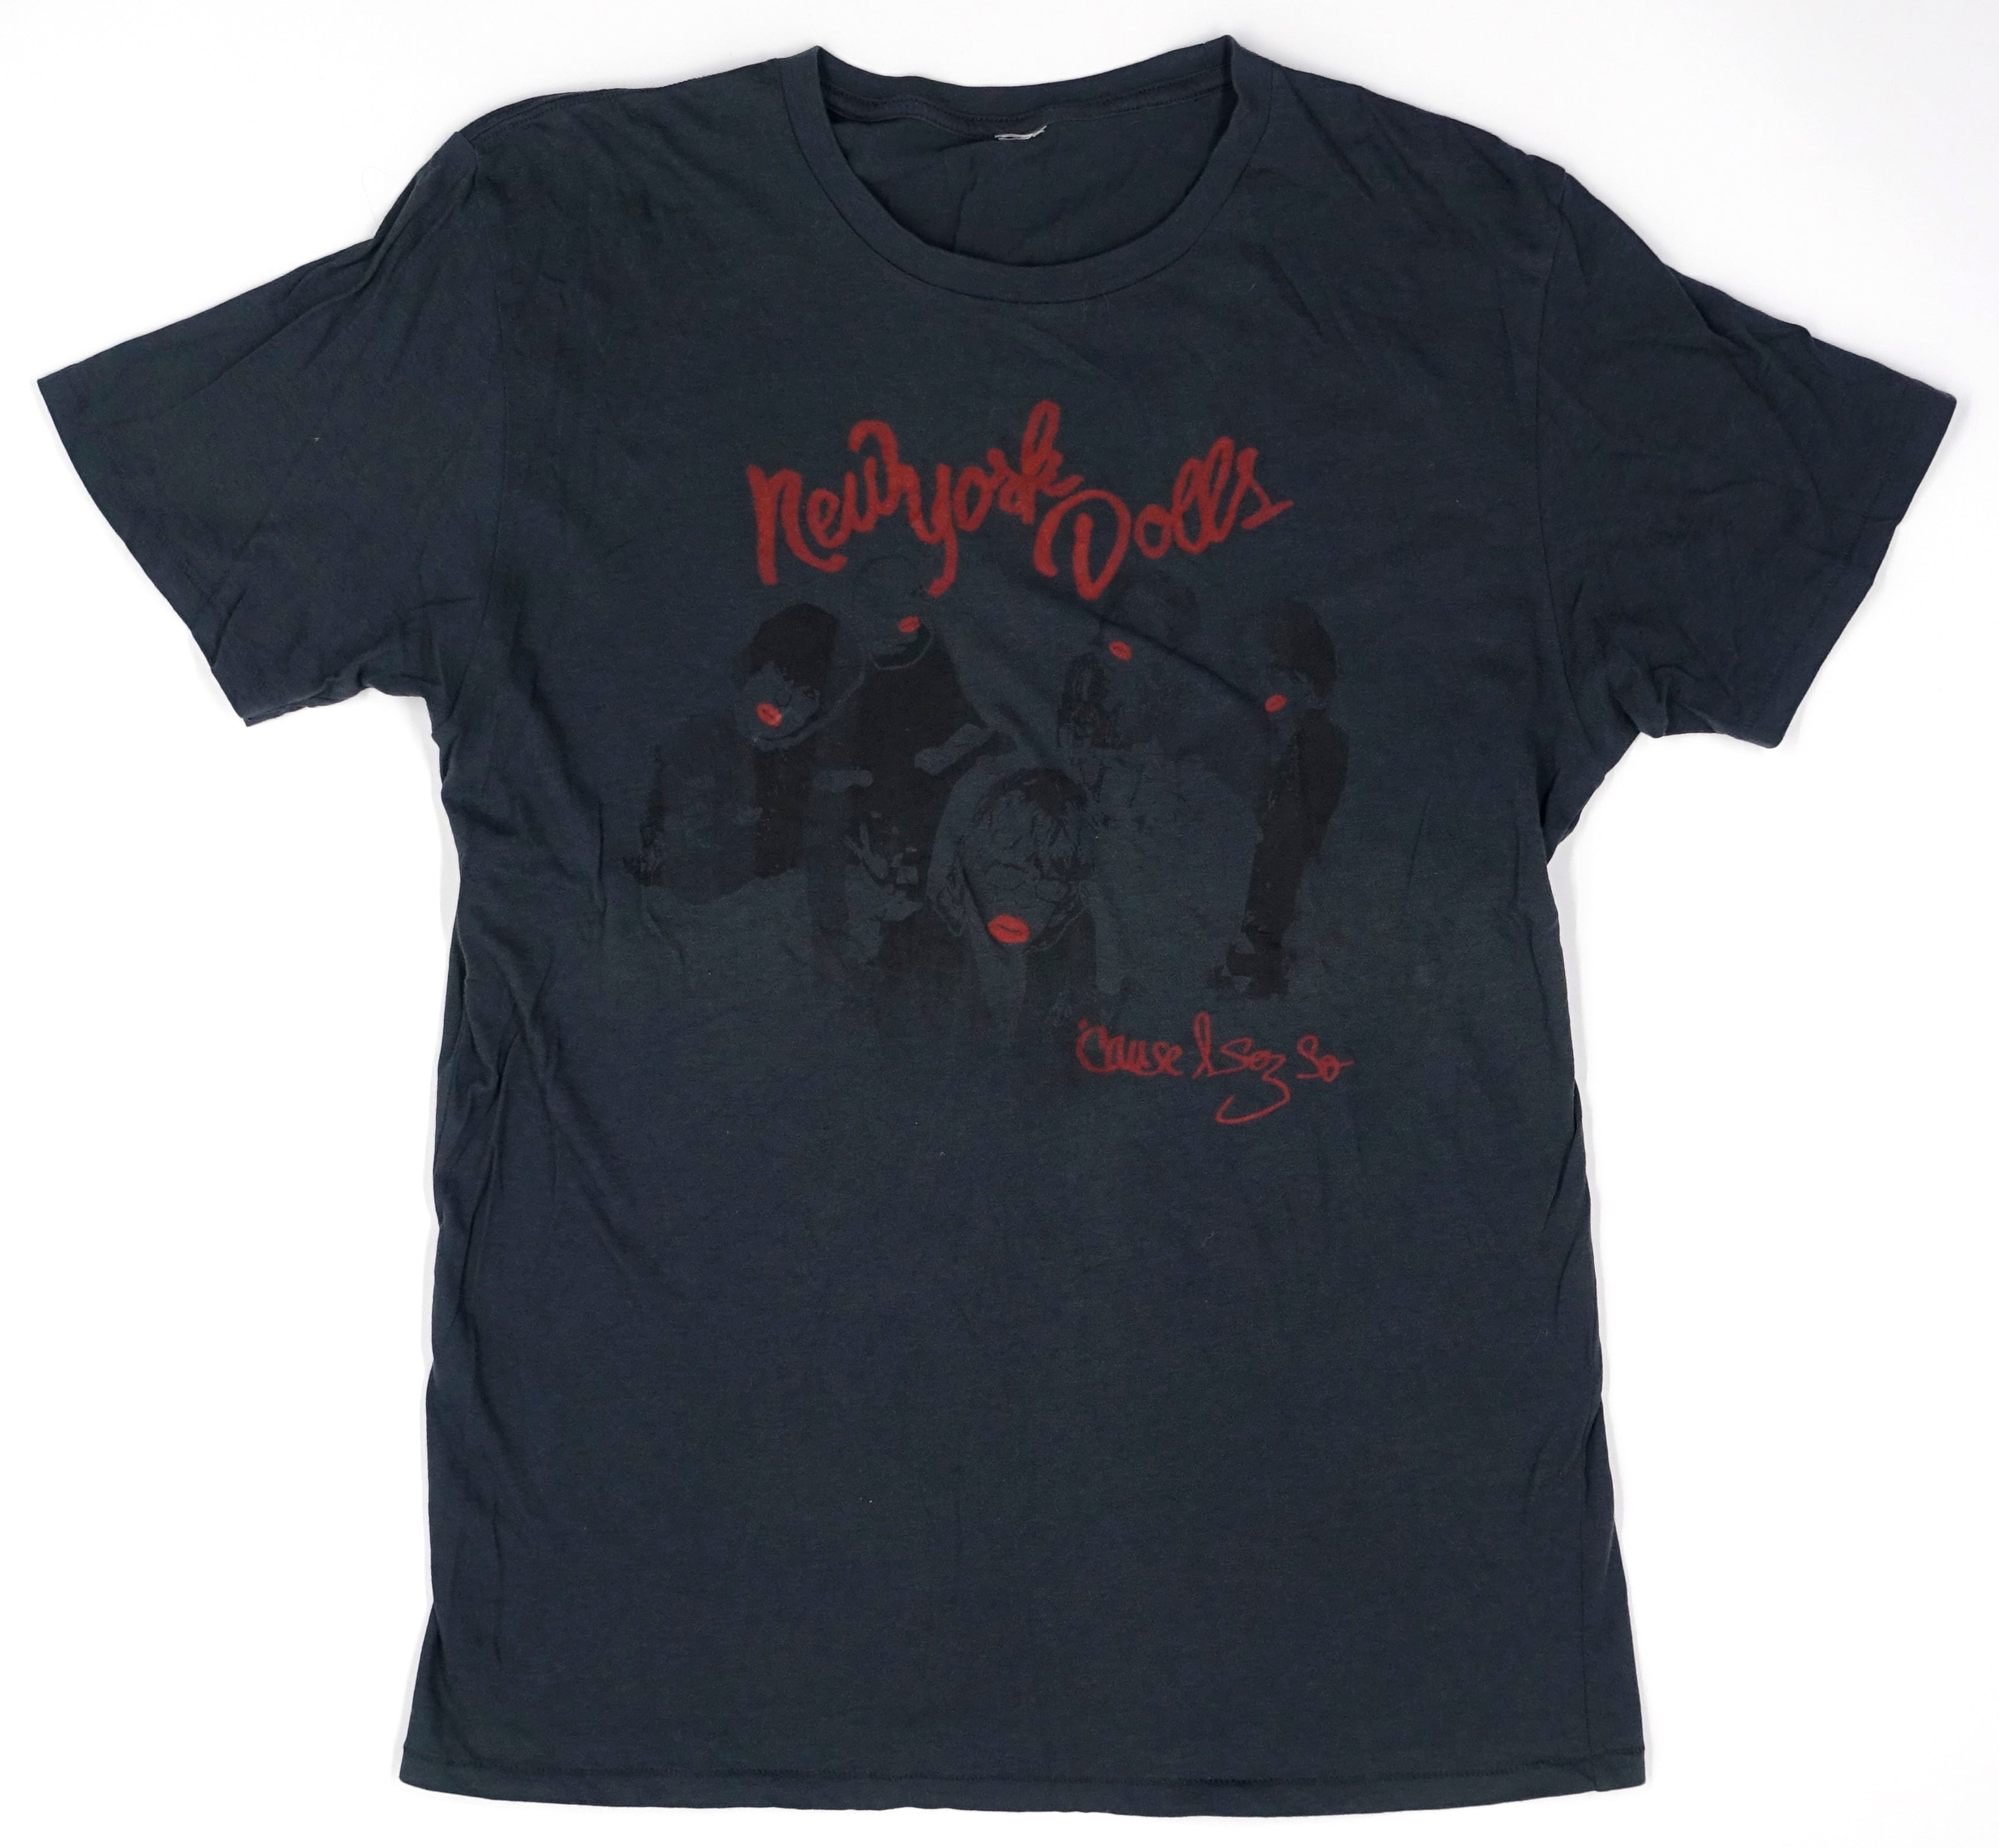 New York Dolls ‎– 'Cause I Sez So 2009 Tour Shirt Size Large